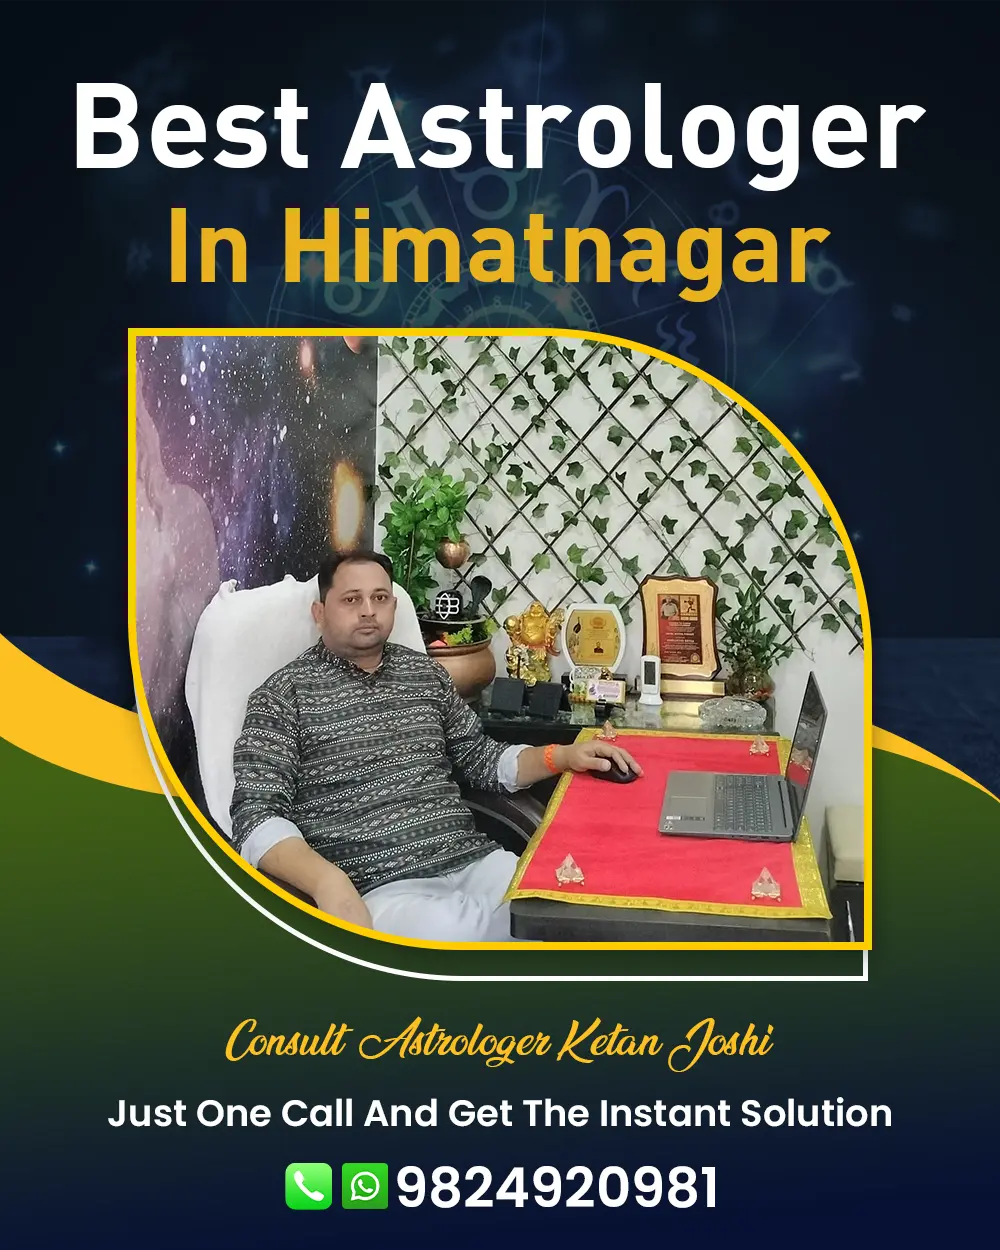 Best Astrologer In Himatnagar